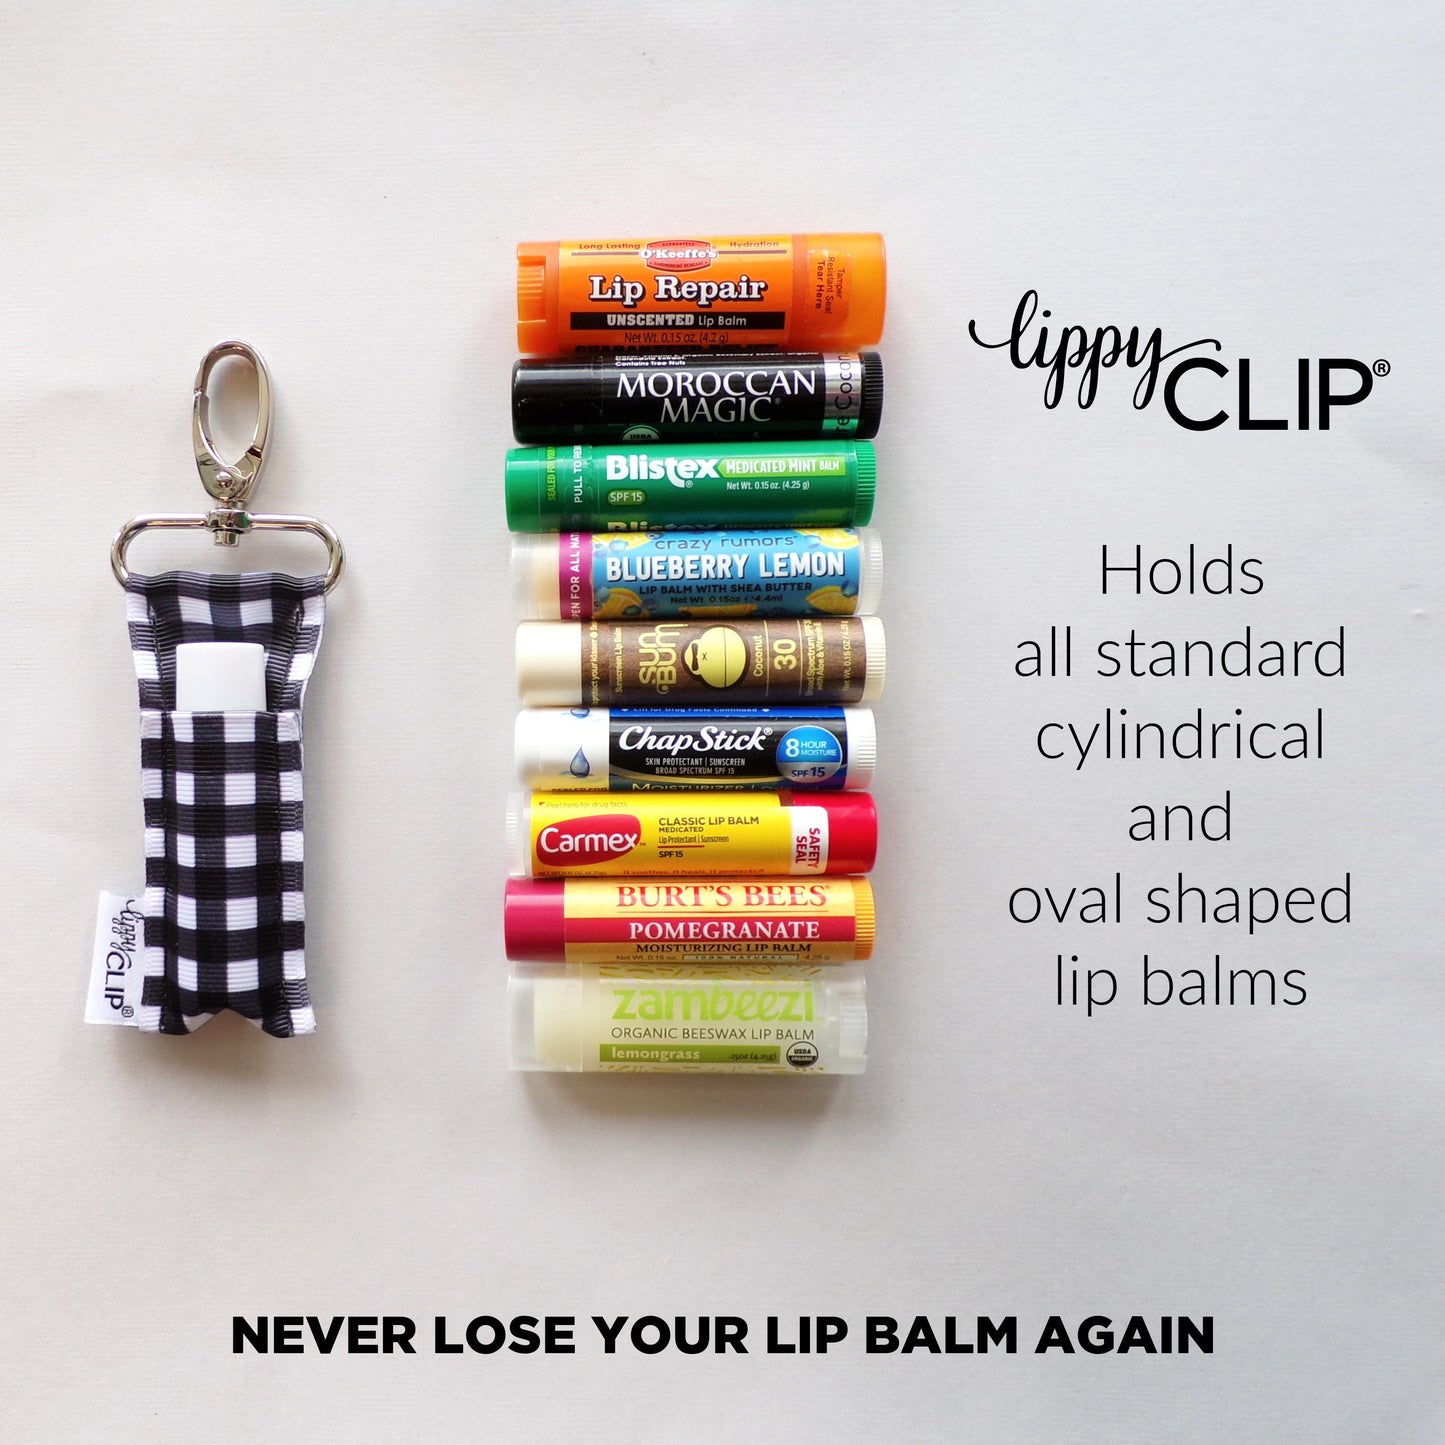 Brown Cow Hide LippyClip® Lip Balm Holder